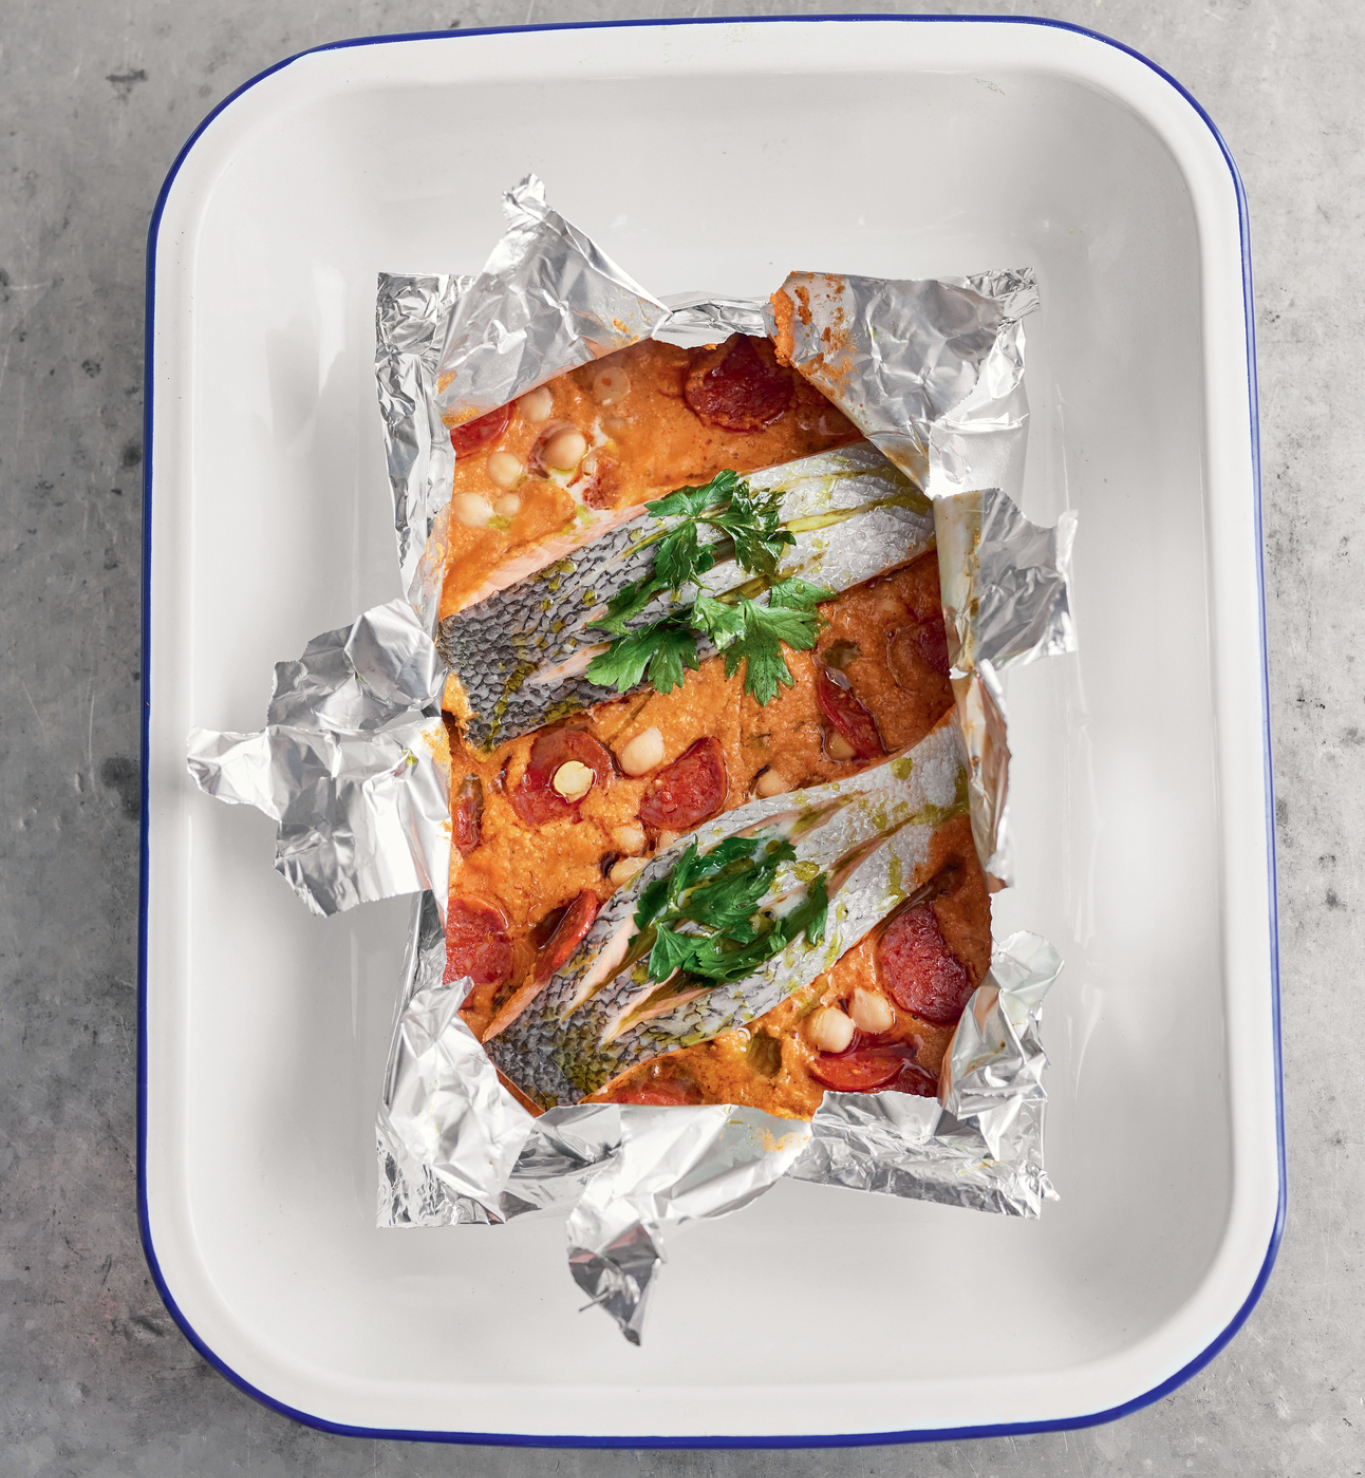 UKUSNA JELA ZA 15 MINUTA Džejmi Oliver, najpoznatiji kuvar na svetu, ekskluzivno za Alo! otkriva zgodna rešenja za brz ručak